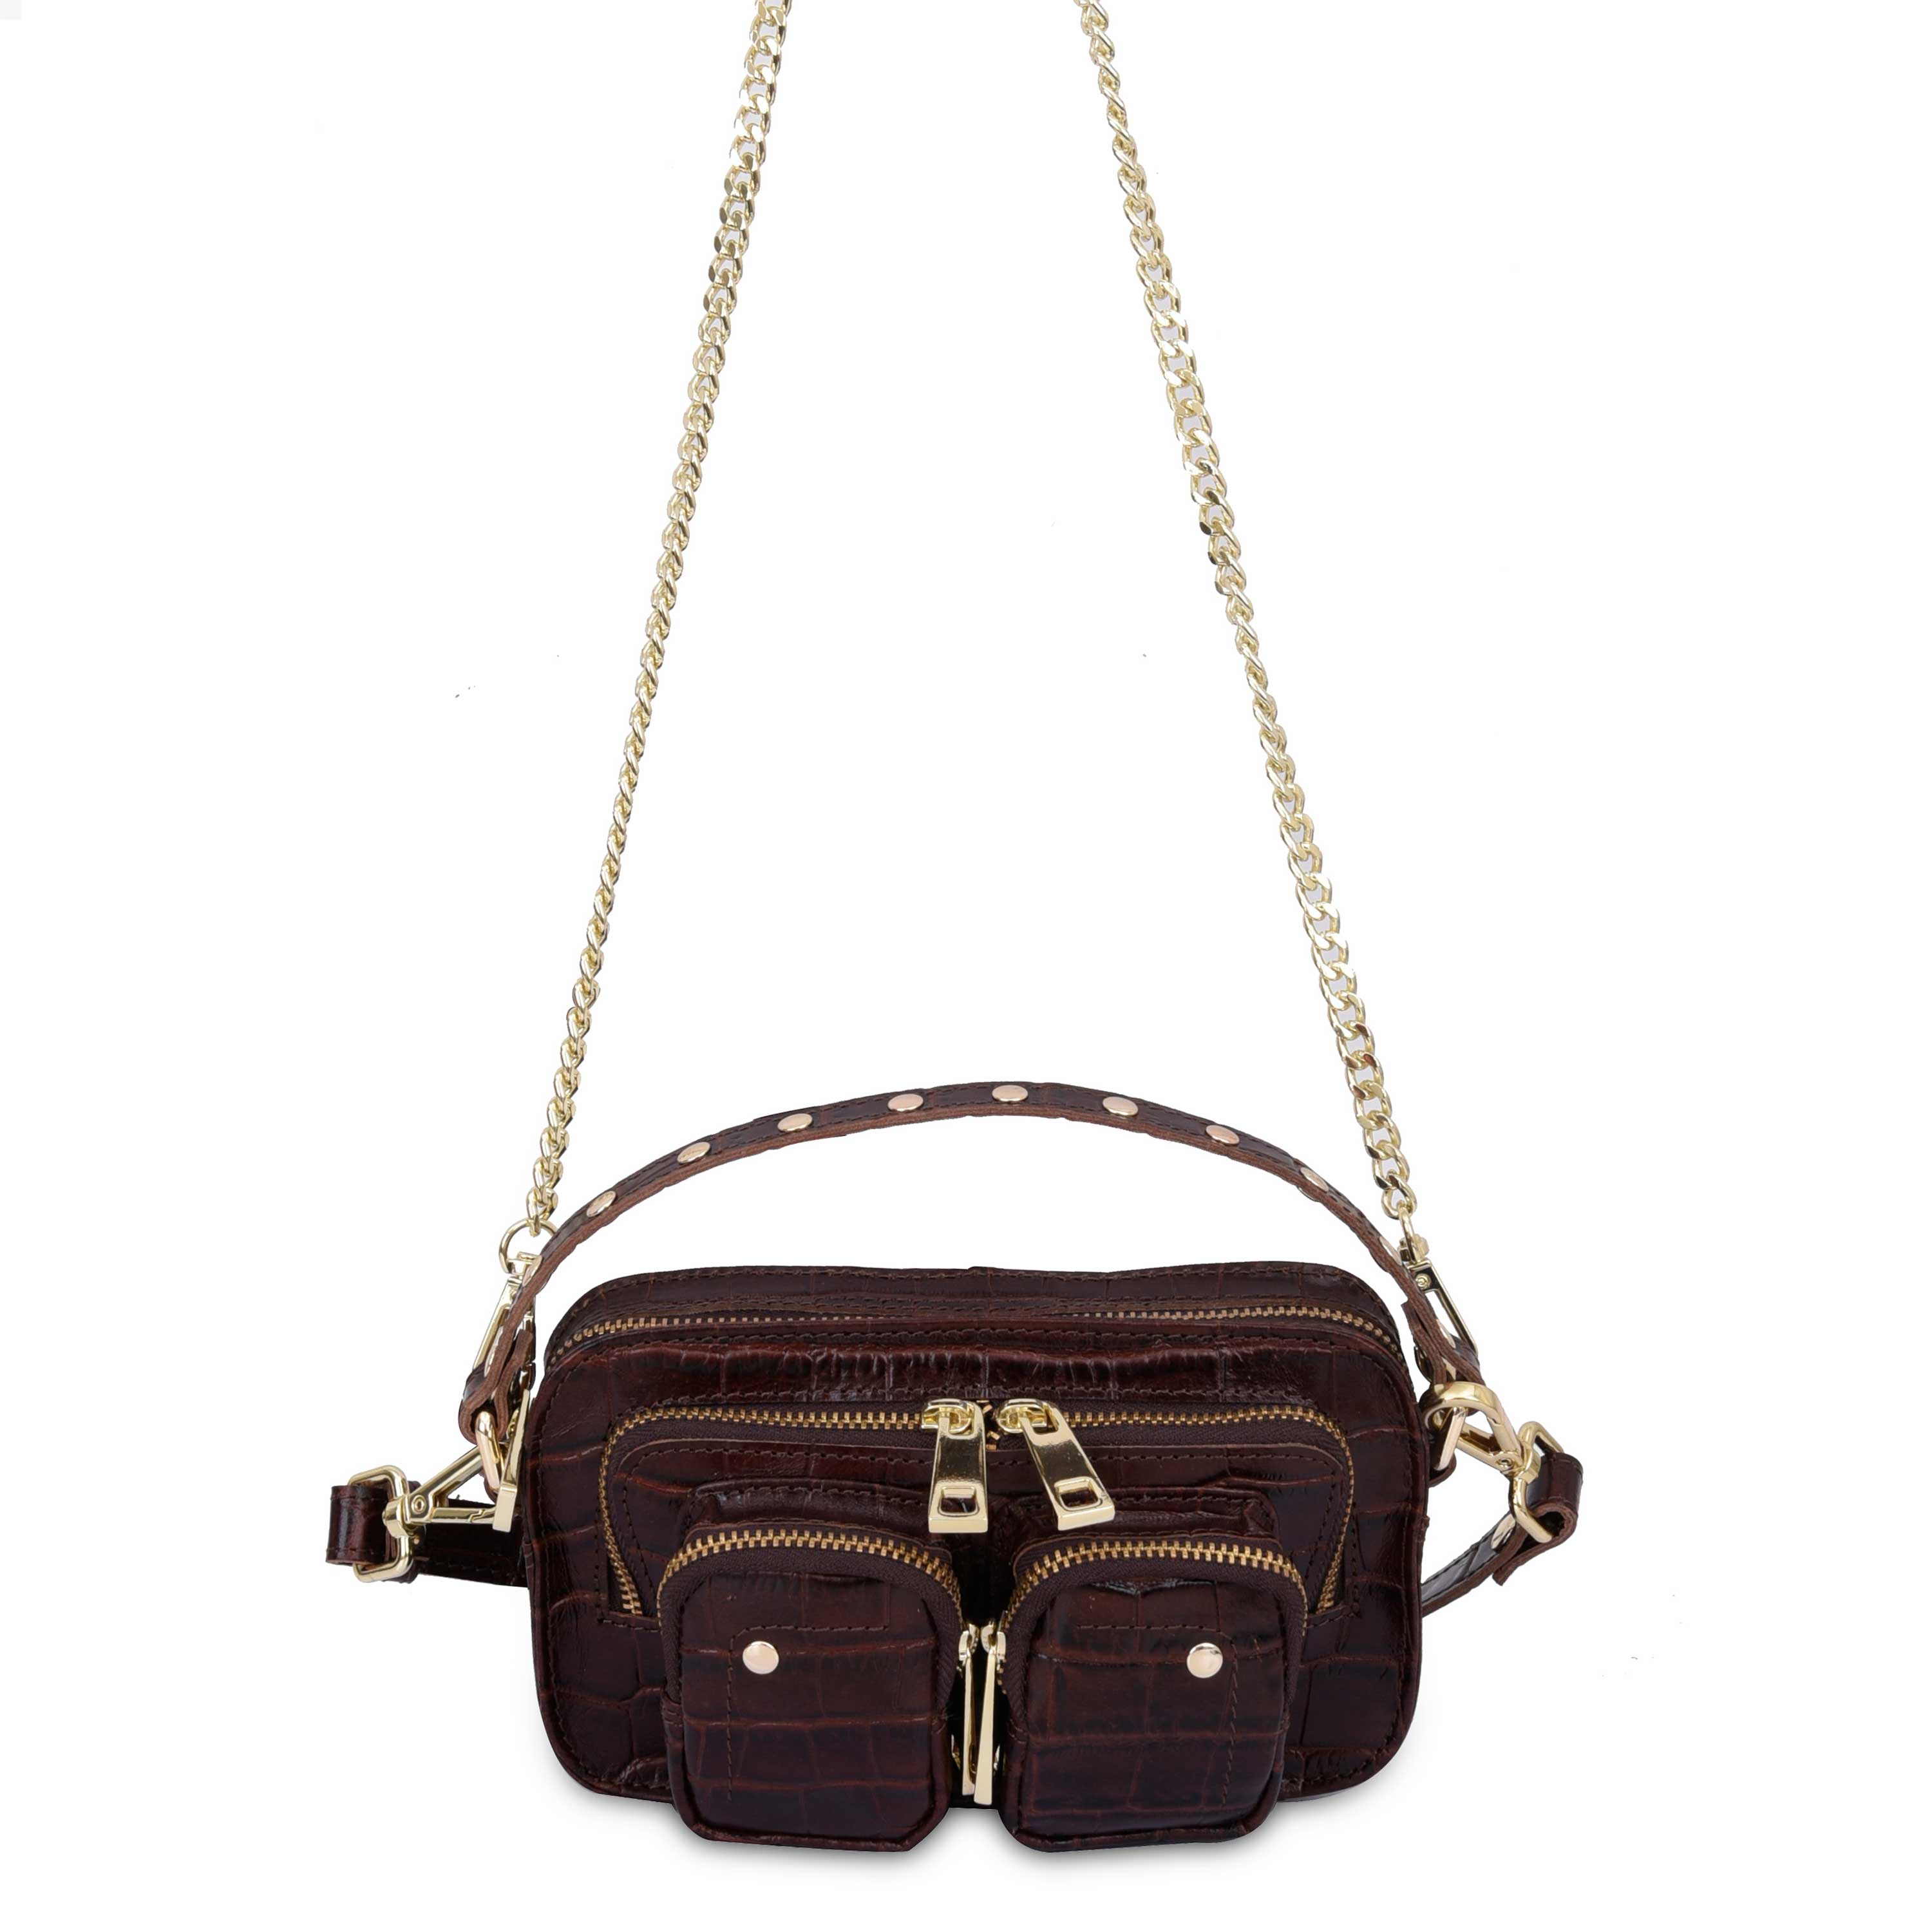 Giada Helena Handbag in Anthracite - in the JOOP! Online Shop